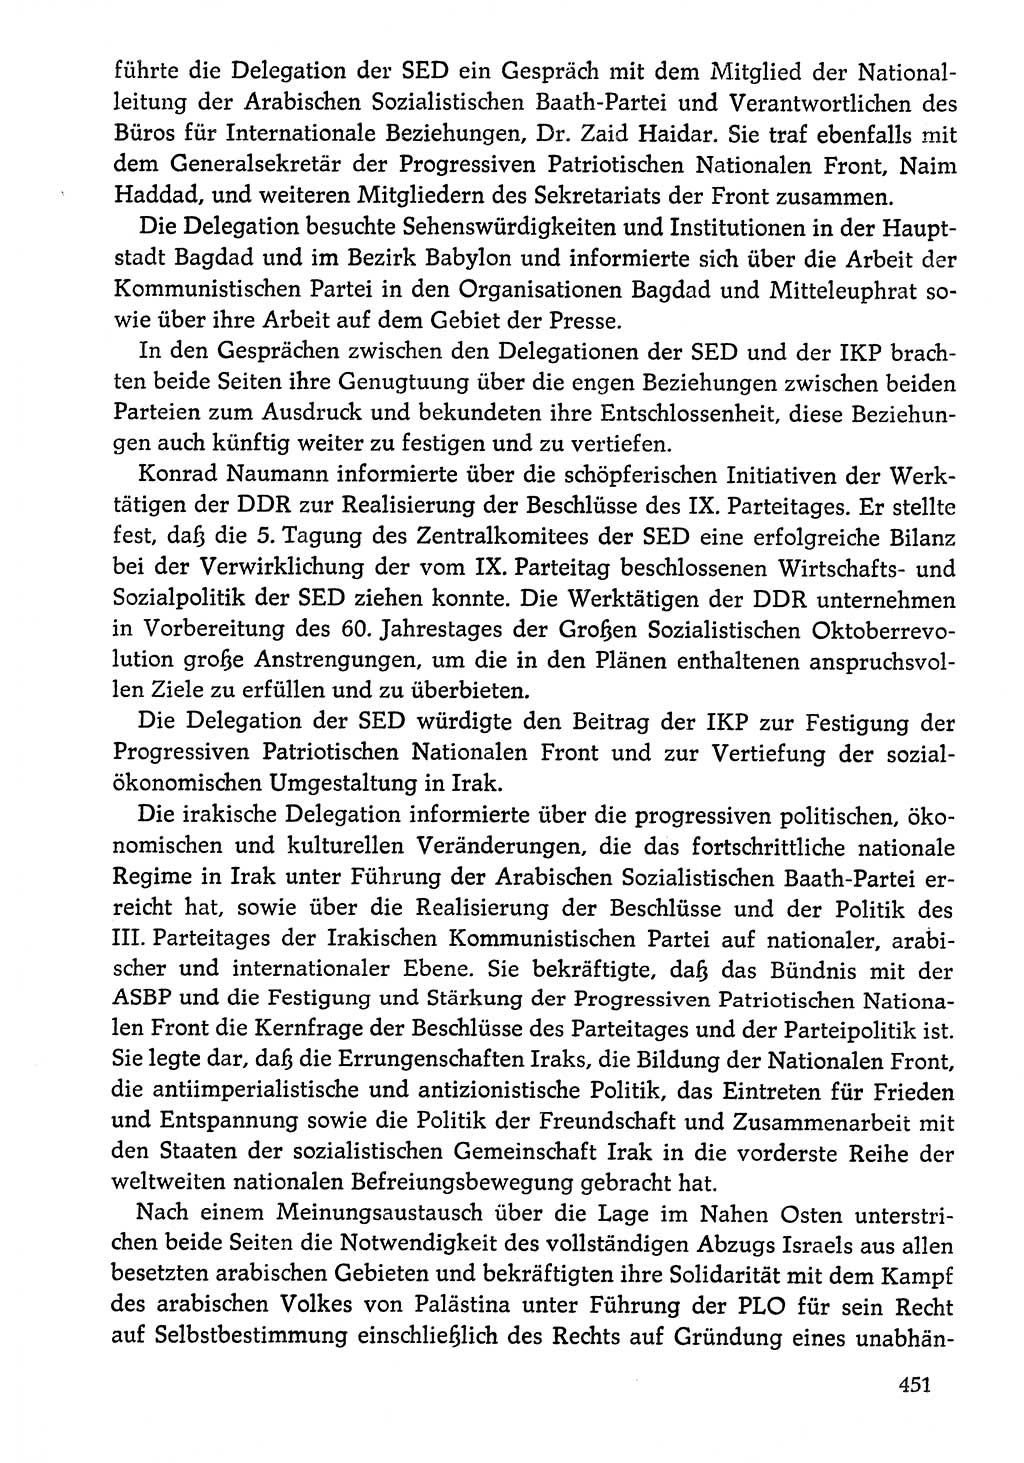 Dokumente der Sozialistischen Einheitspartei Deutschlands (SED) [Deutsche Demokratische Republik (DDR)] 1976-1977, Seite 451 (Dok. SED DDR 1976-1977, S. 451)